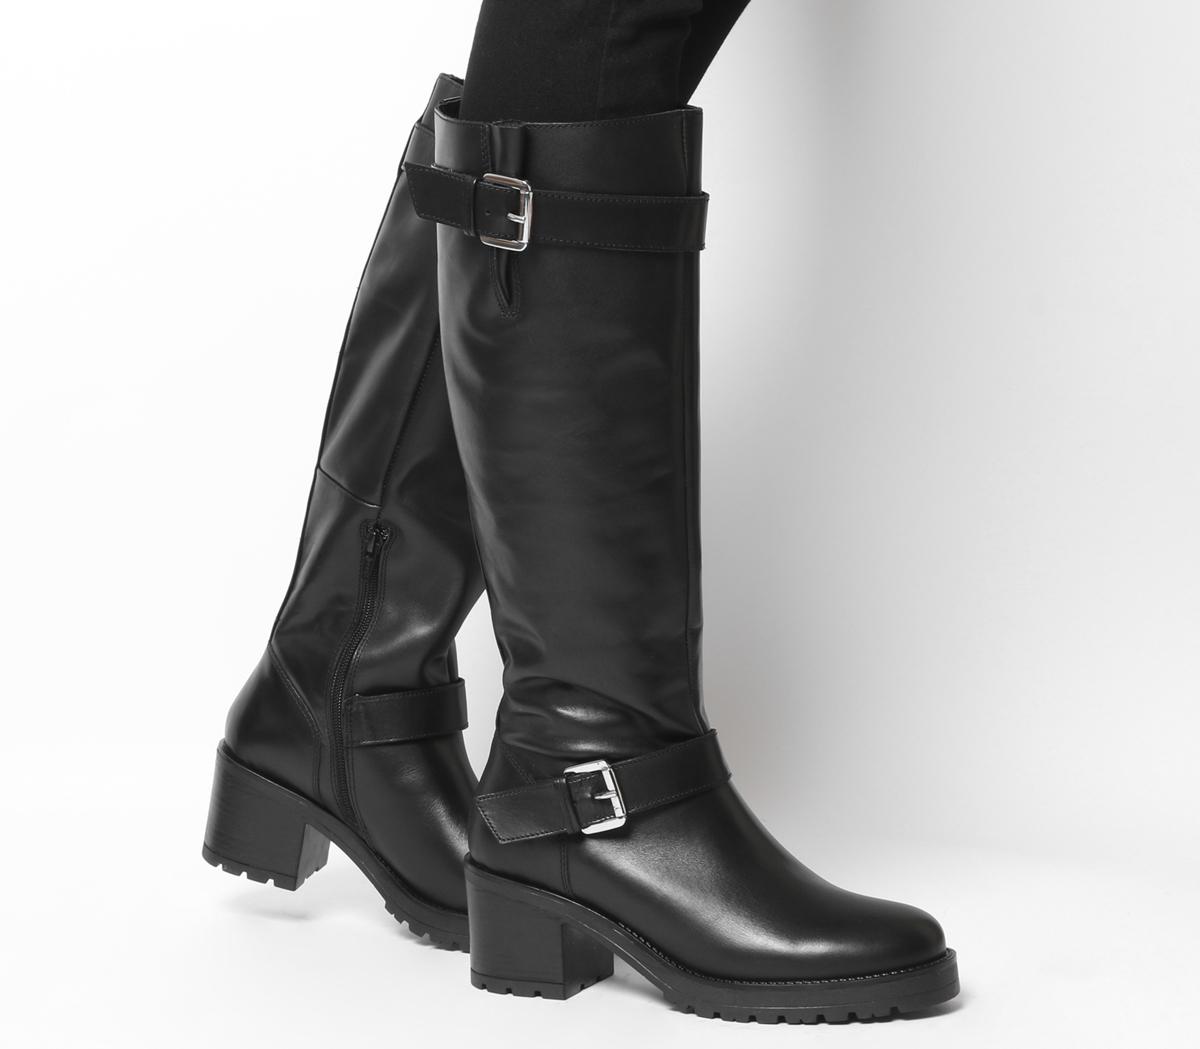 OFFICEKadi Casual Mid Buckle Knee BootsBlack Leather